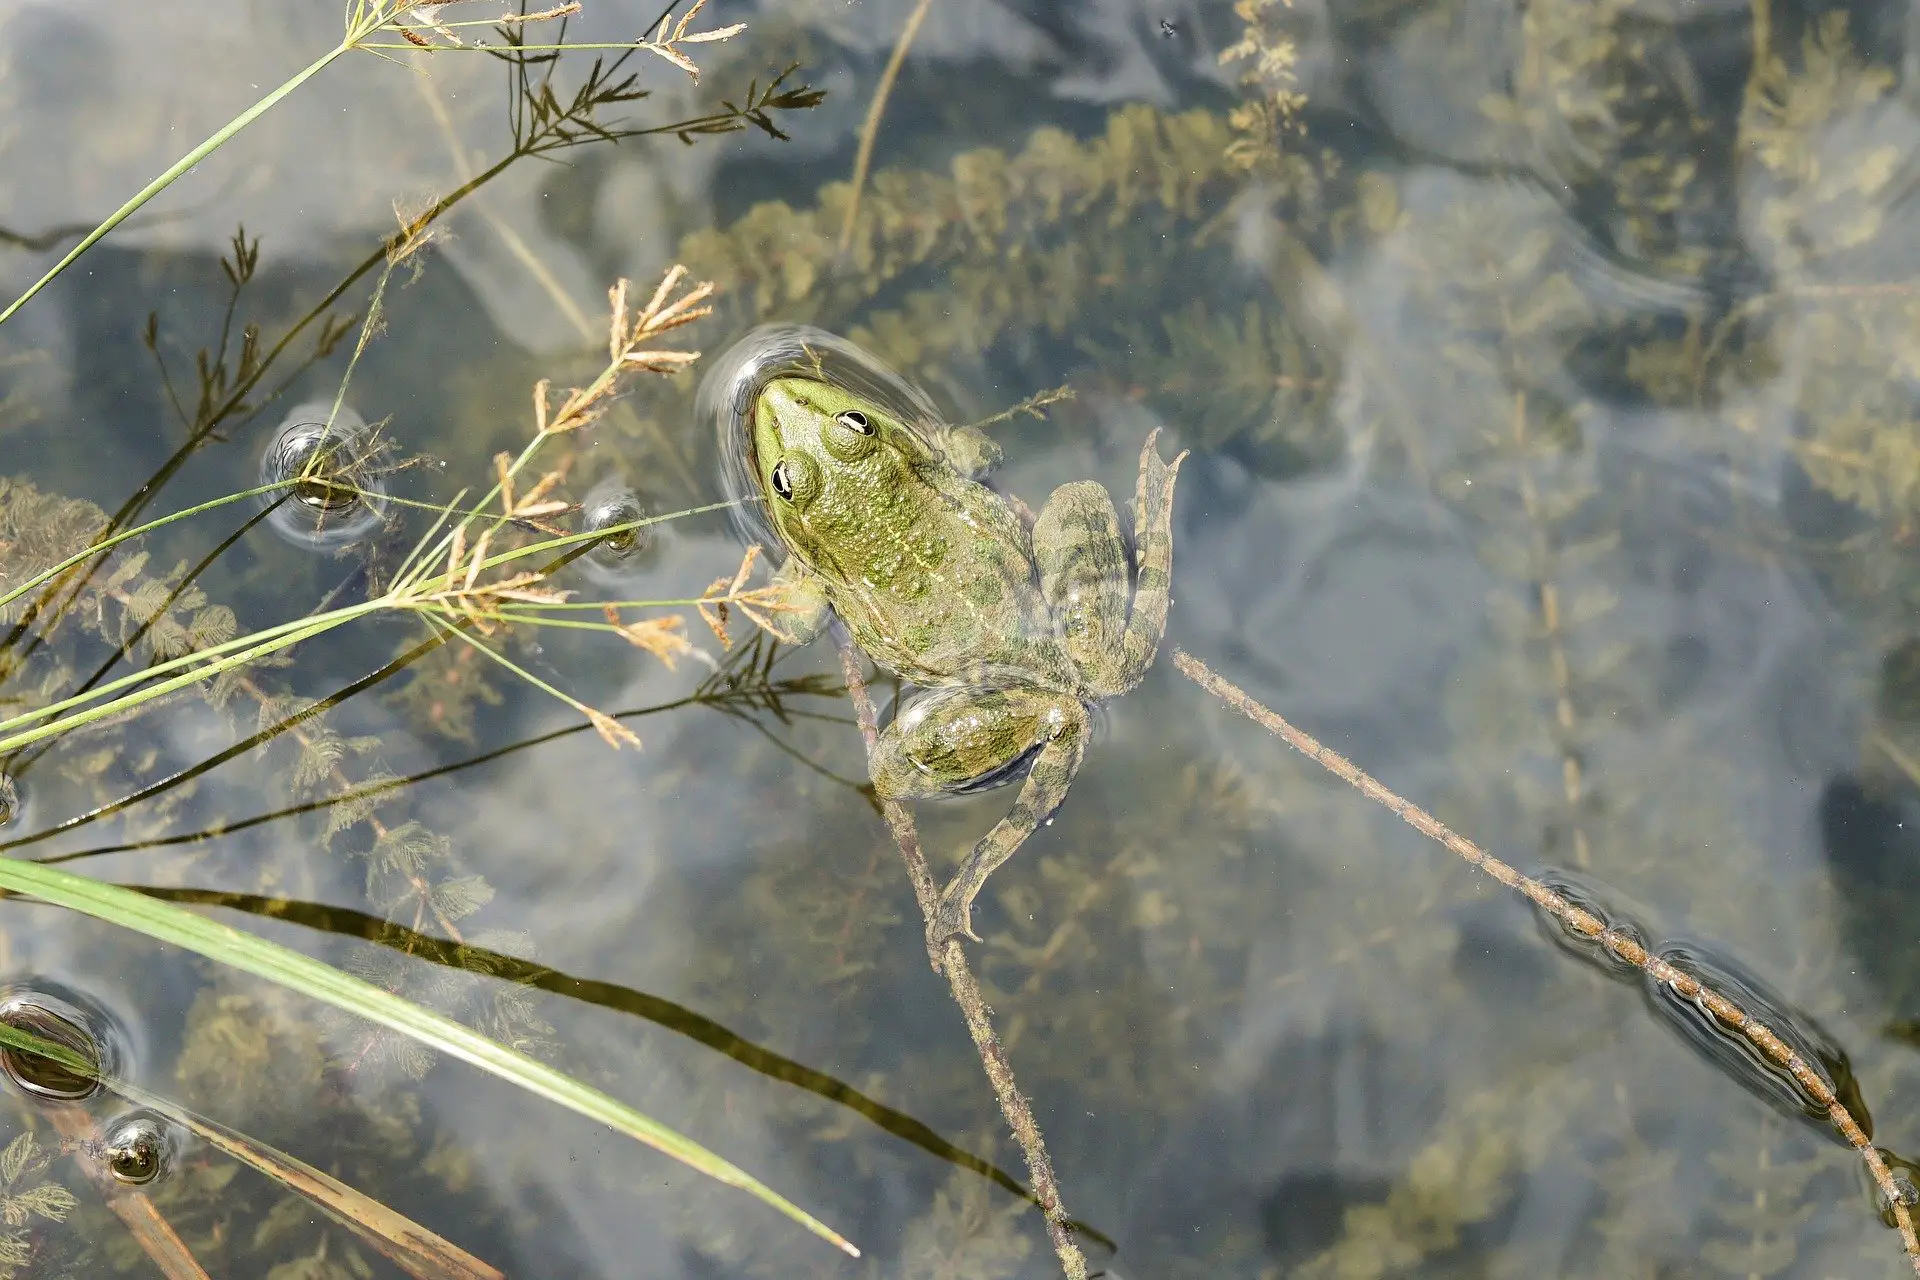 Frog in pond - September Gardening
